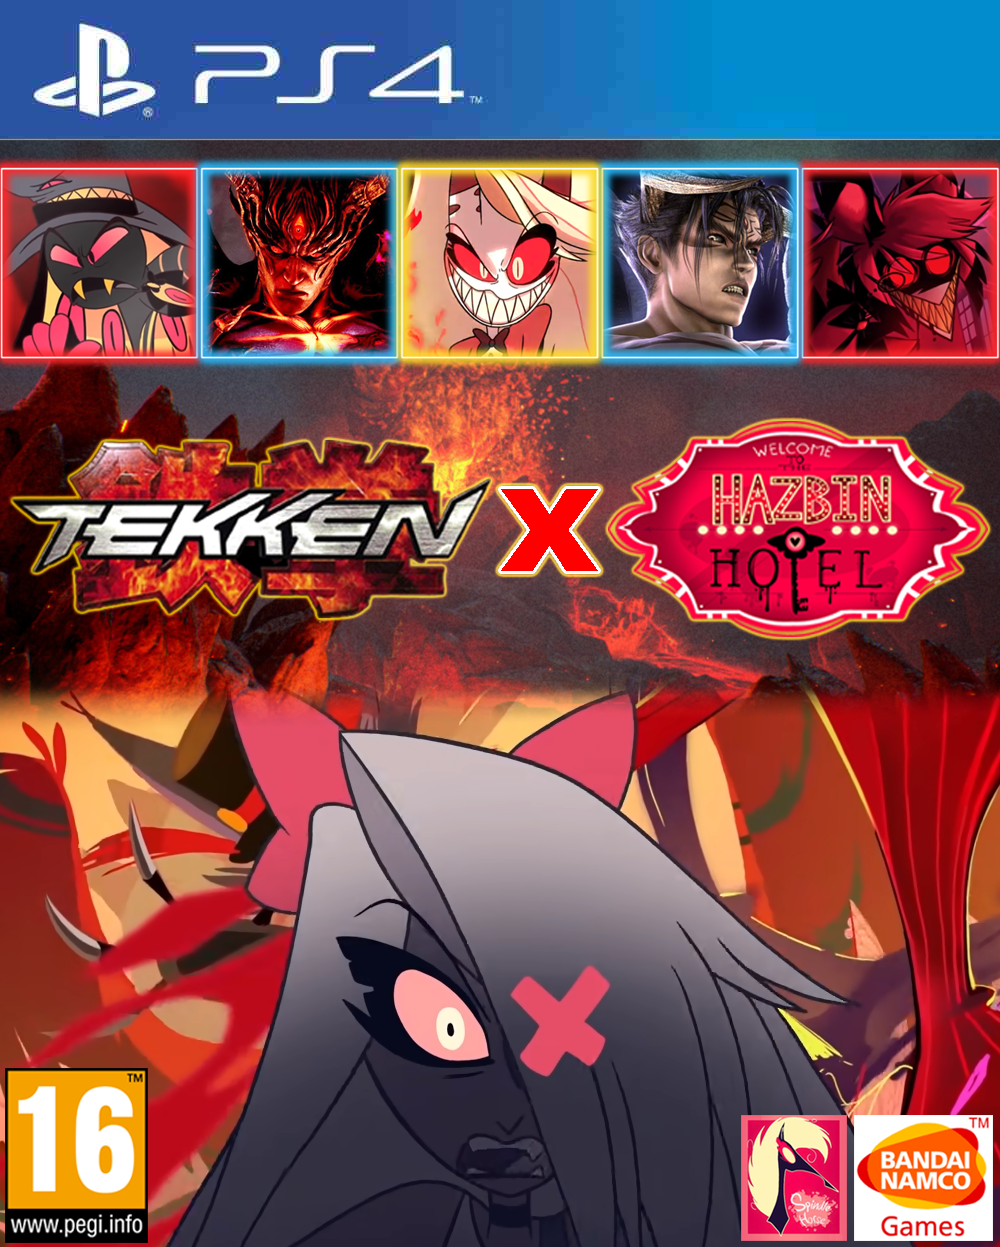 Tekken X Street Fighter - PS4 box art by Duggs on deviantART